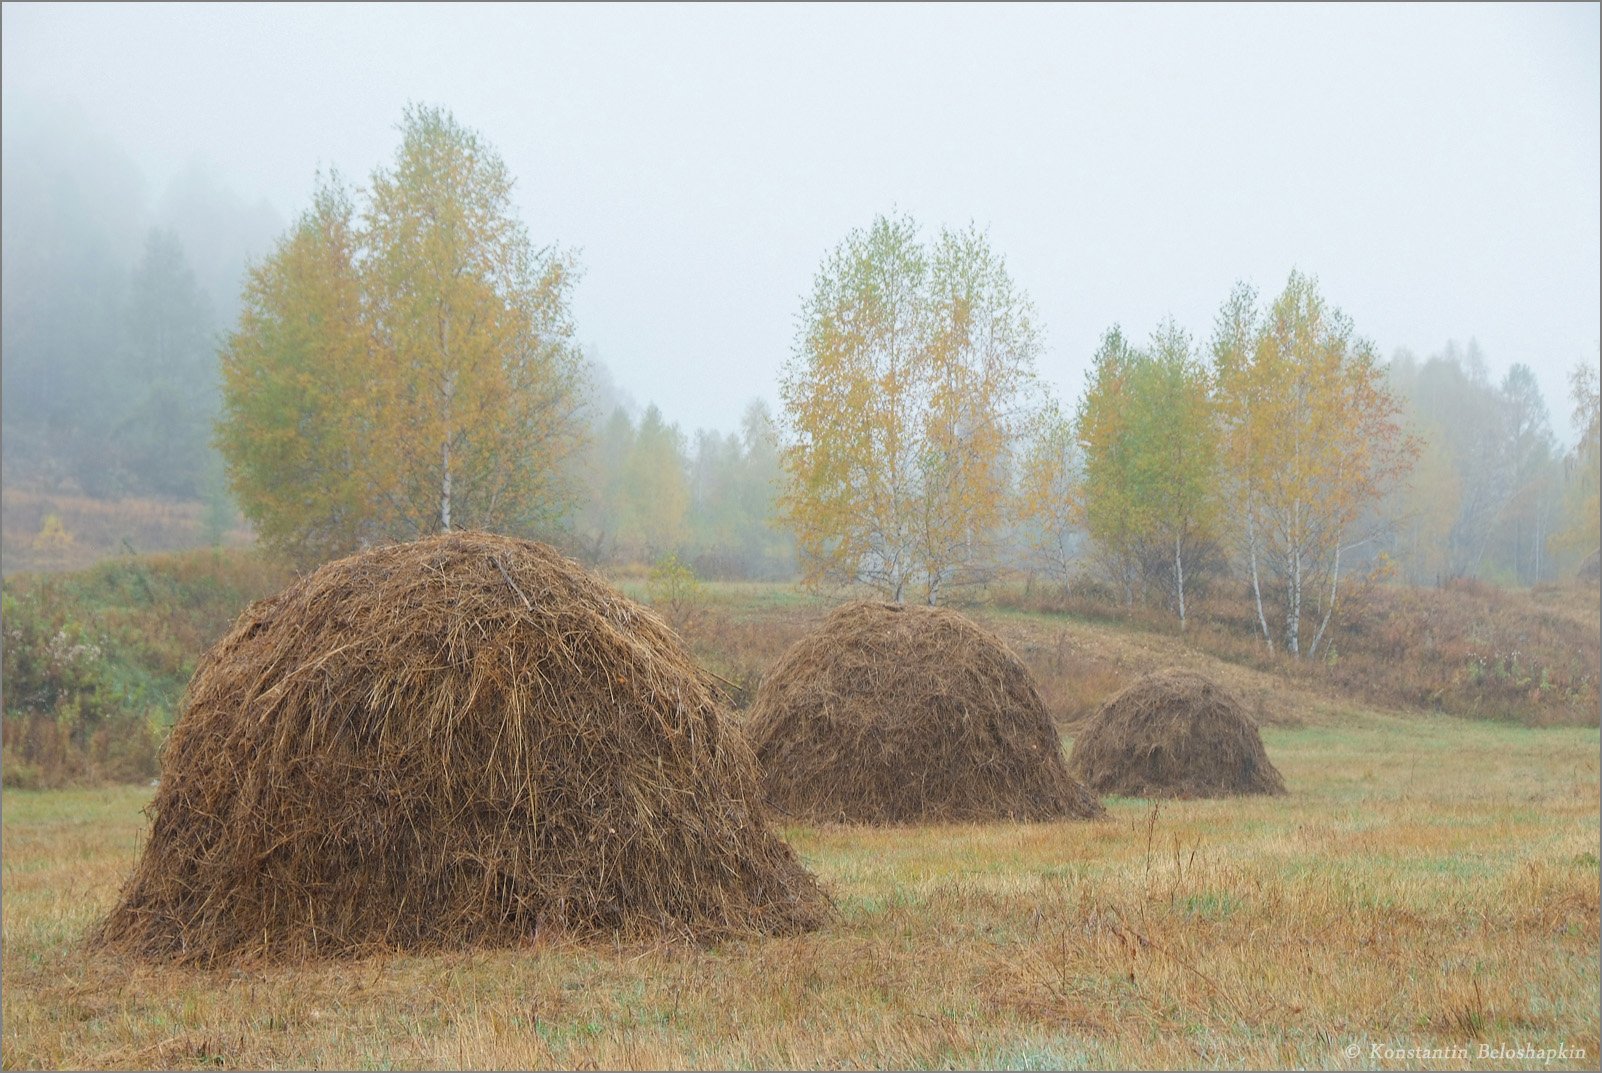 константин белошапкин, стога, туман, уймонская степь, утро, Константин Белошапкин